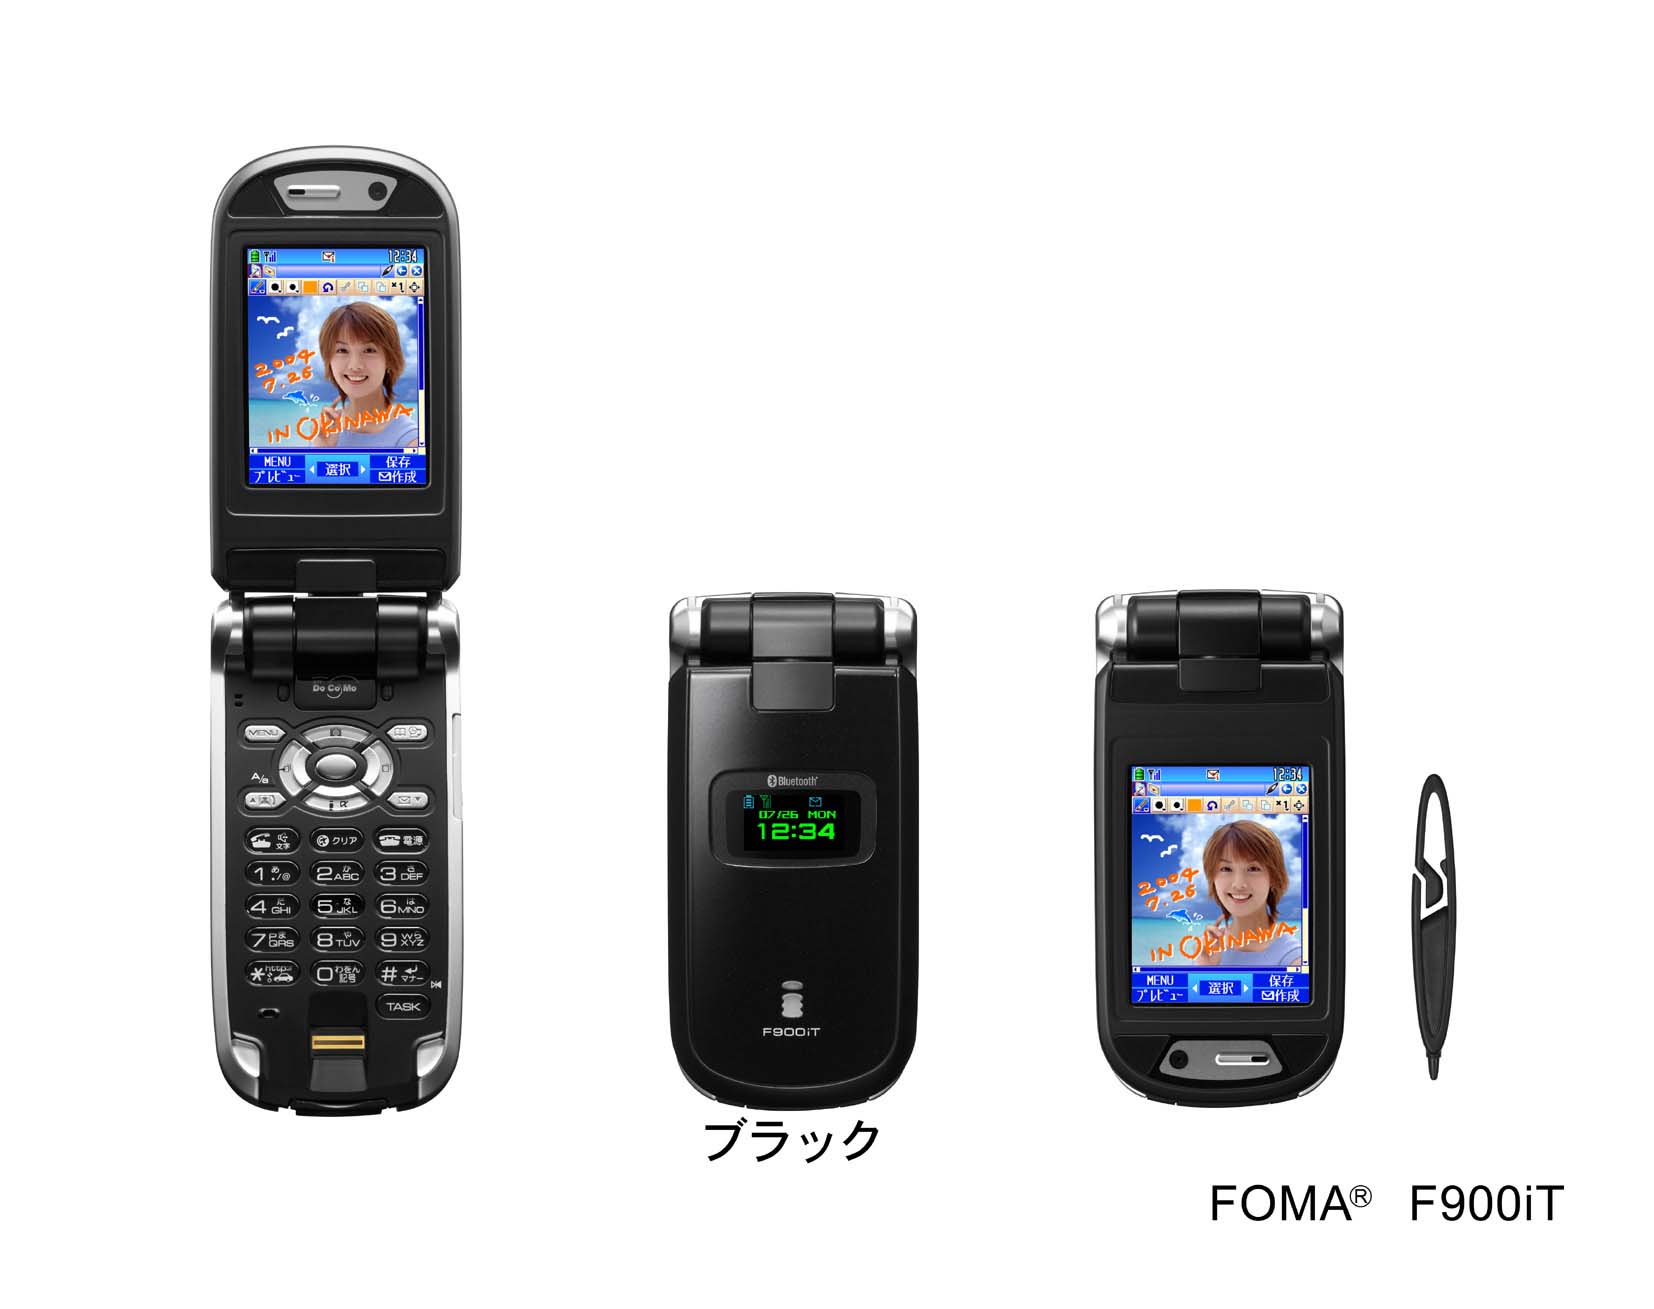 タッチパネル搭載「FOMA F900iT」の発売について- FUJITSU Japan